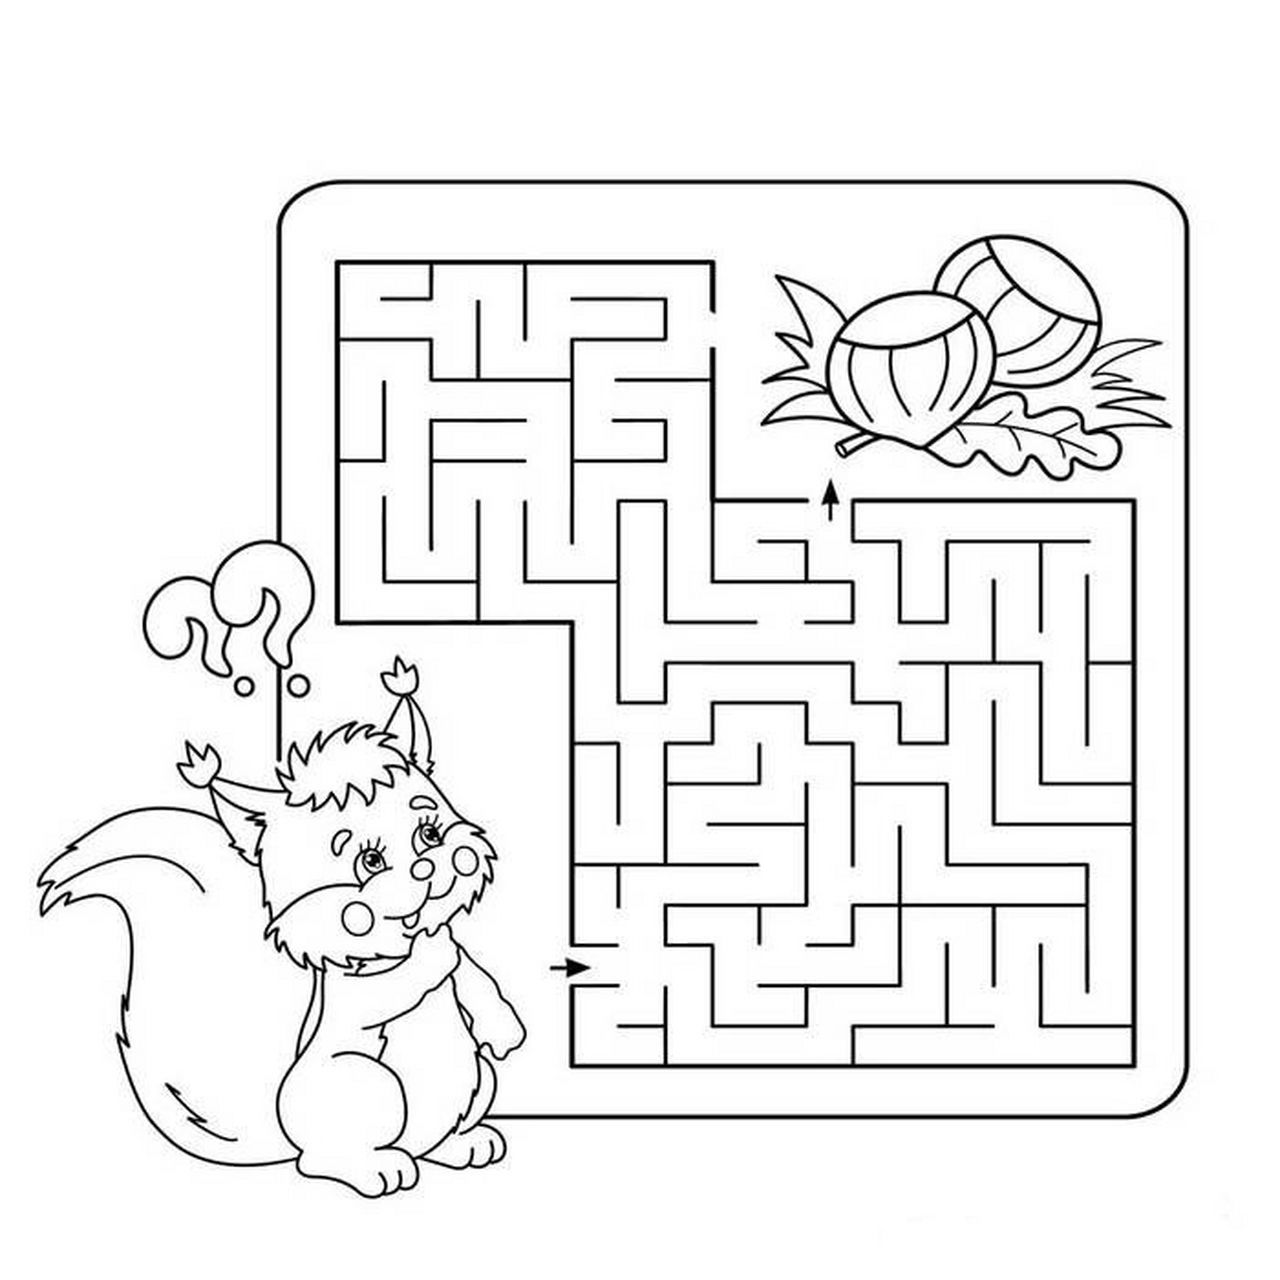 幼儿园中班大班益智区环创走迷宫 分享一些适合大班益智区走迷宫的图